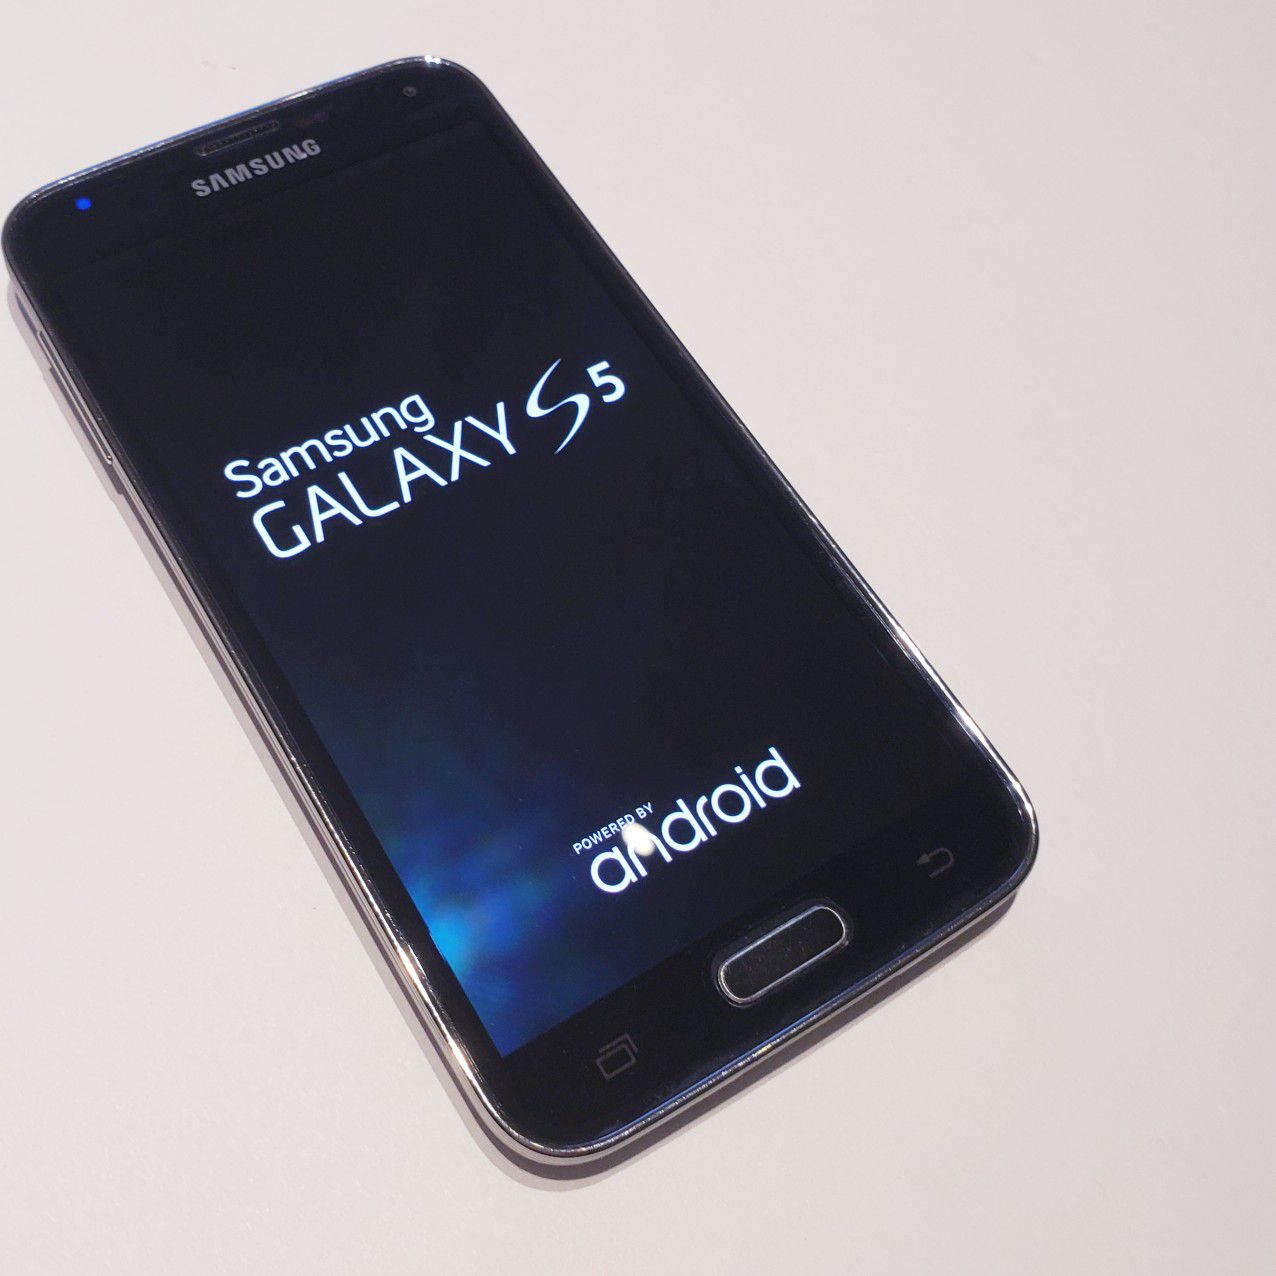 Samsung Galaxy S5 - Unlocked - No Damage - Good Condition!